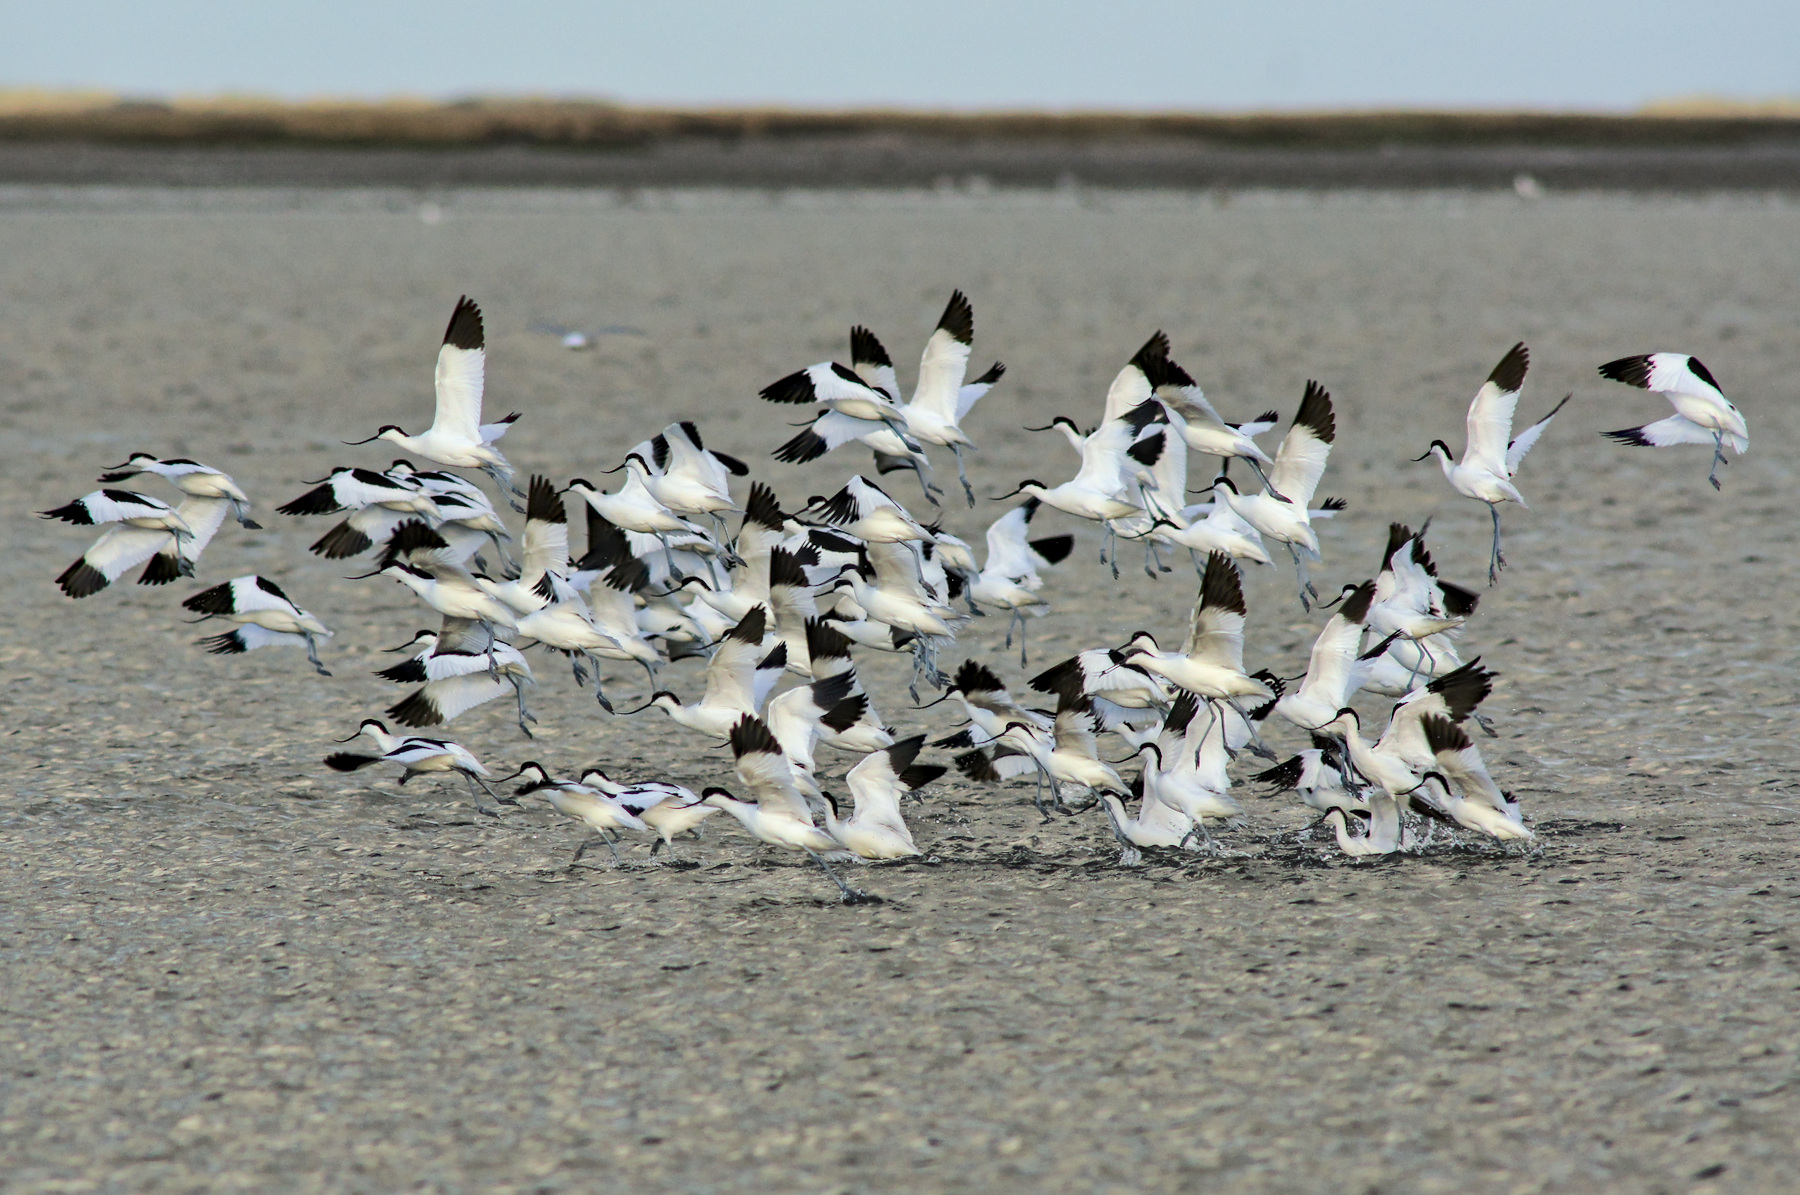 Een groep kluten (witte vogels met zwarte omhoogwippende snavel, zwarte vleugelpunten en blauwe poten) vliegt op uit ondiep water. De meeste vliegen al, enkelen staan nog tot de buik in het water.